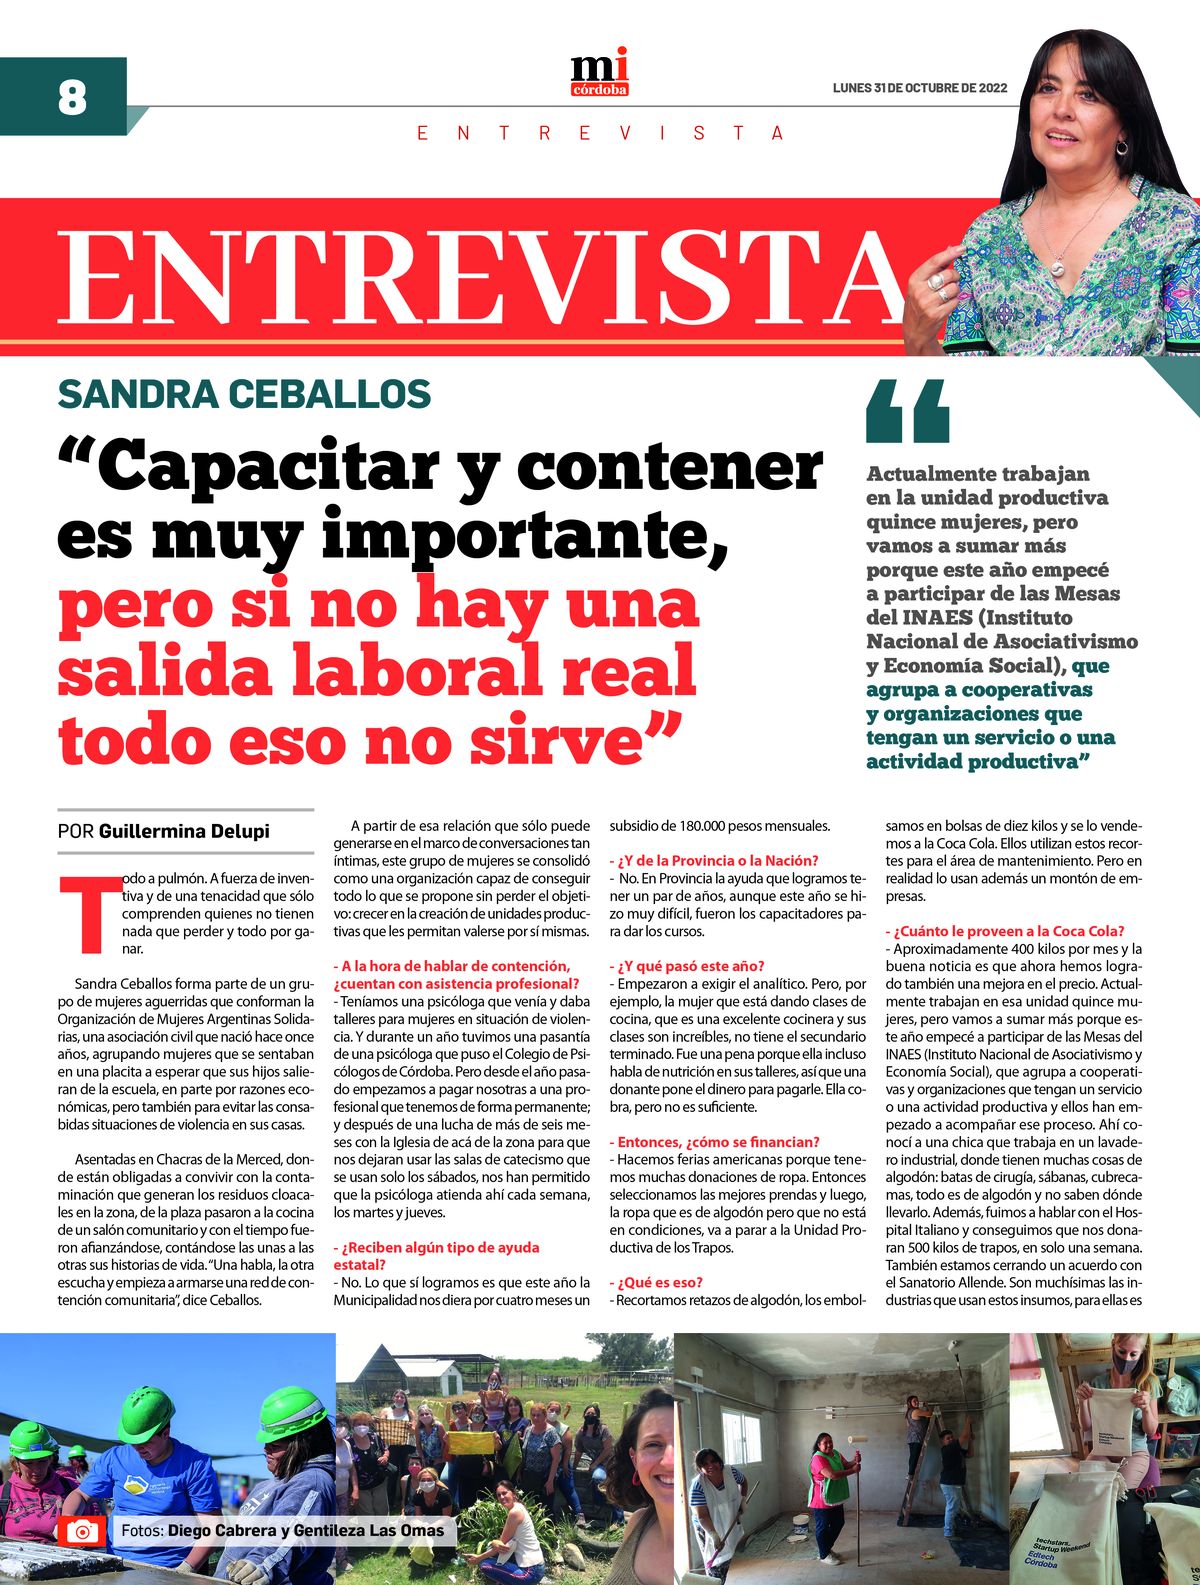 Está disponible la 33ra edición del semanario Marca Informativa Córdoba